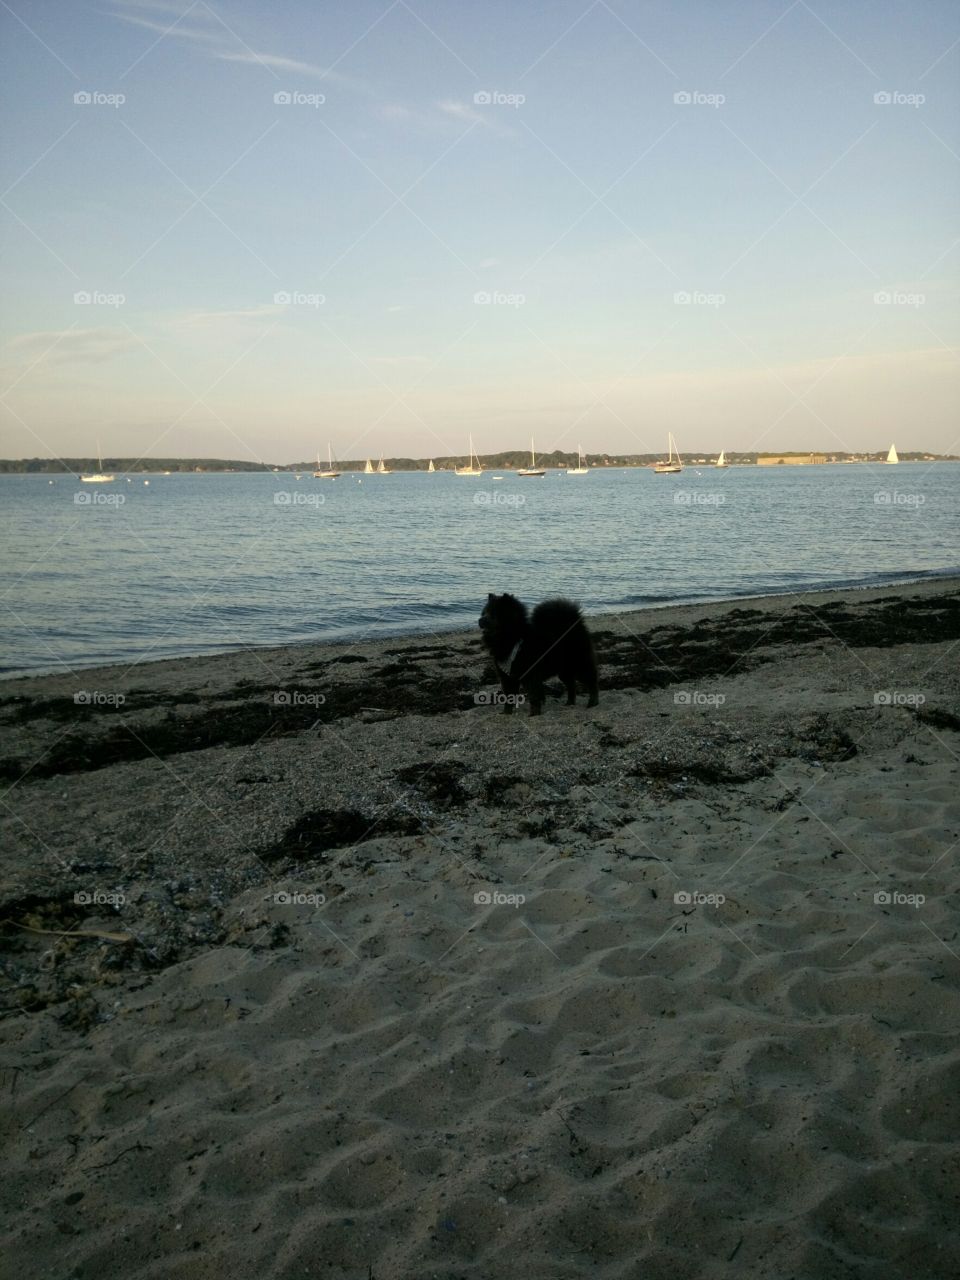 A dog and a beach